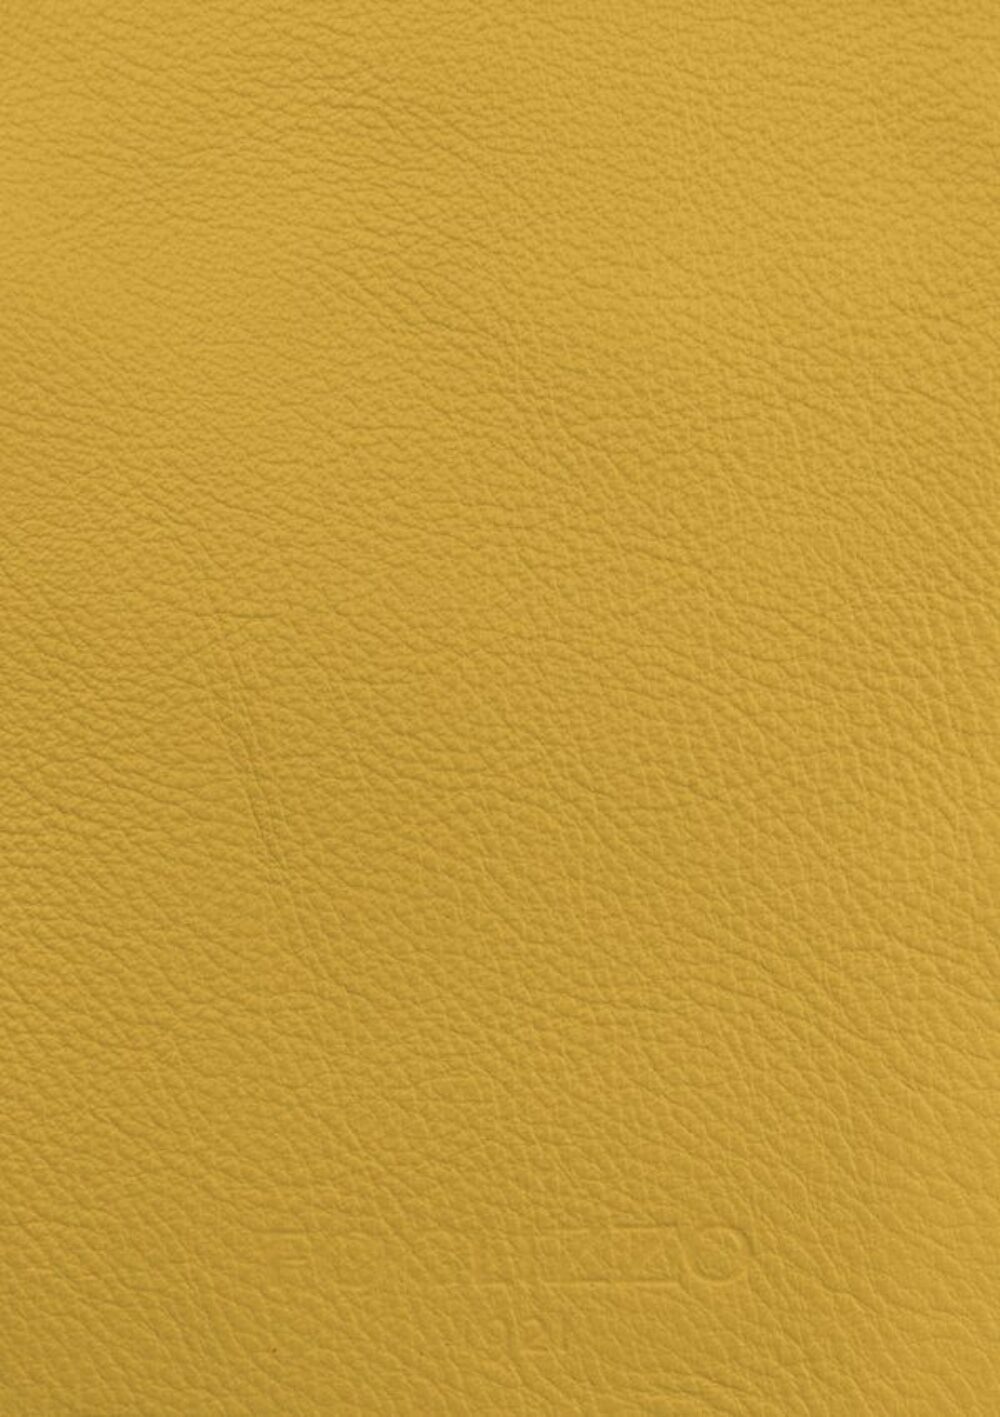 Diseño de lujo y alfombras de alta gama hechas a medida • Chick Yellow Jade